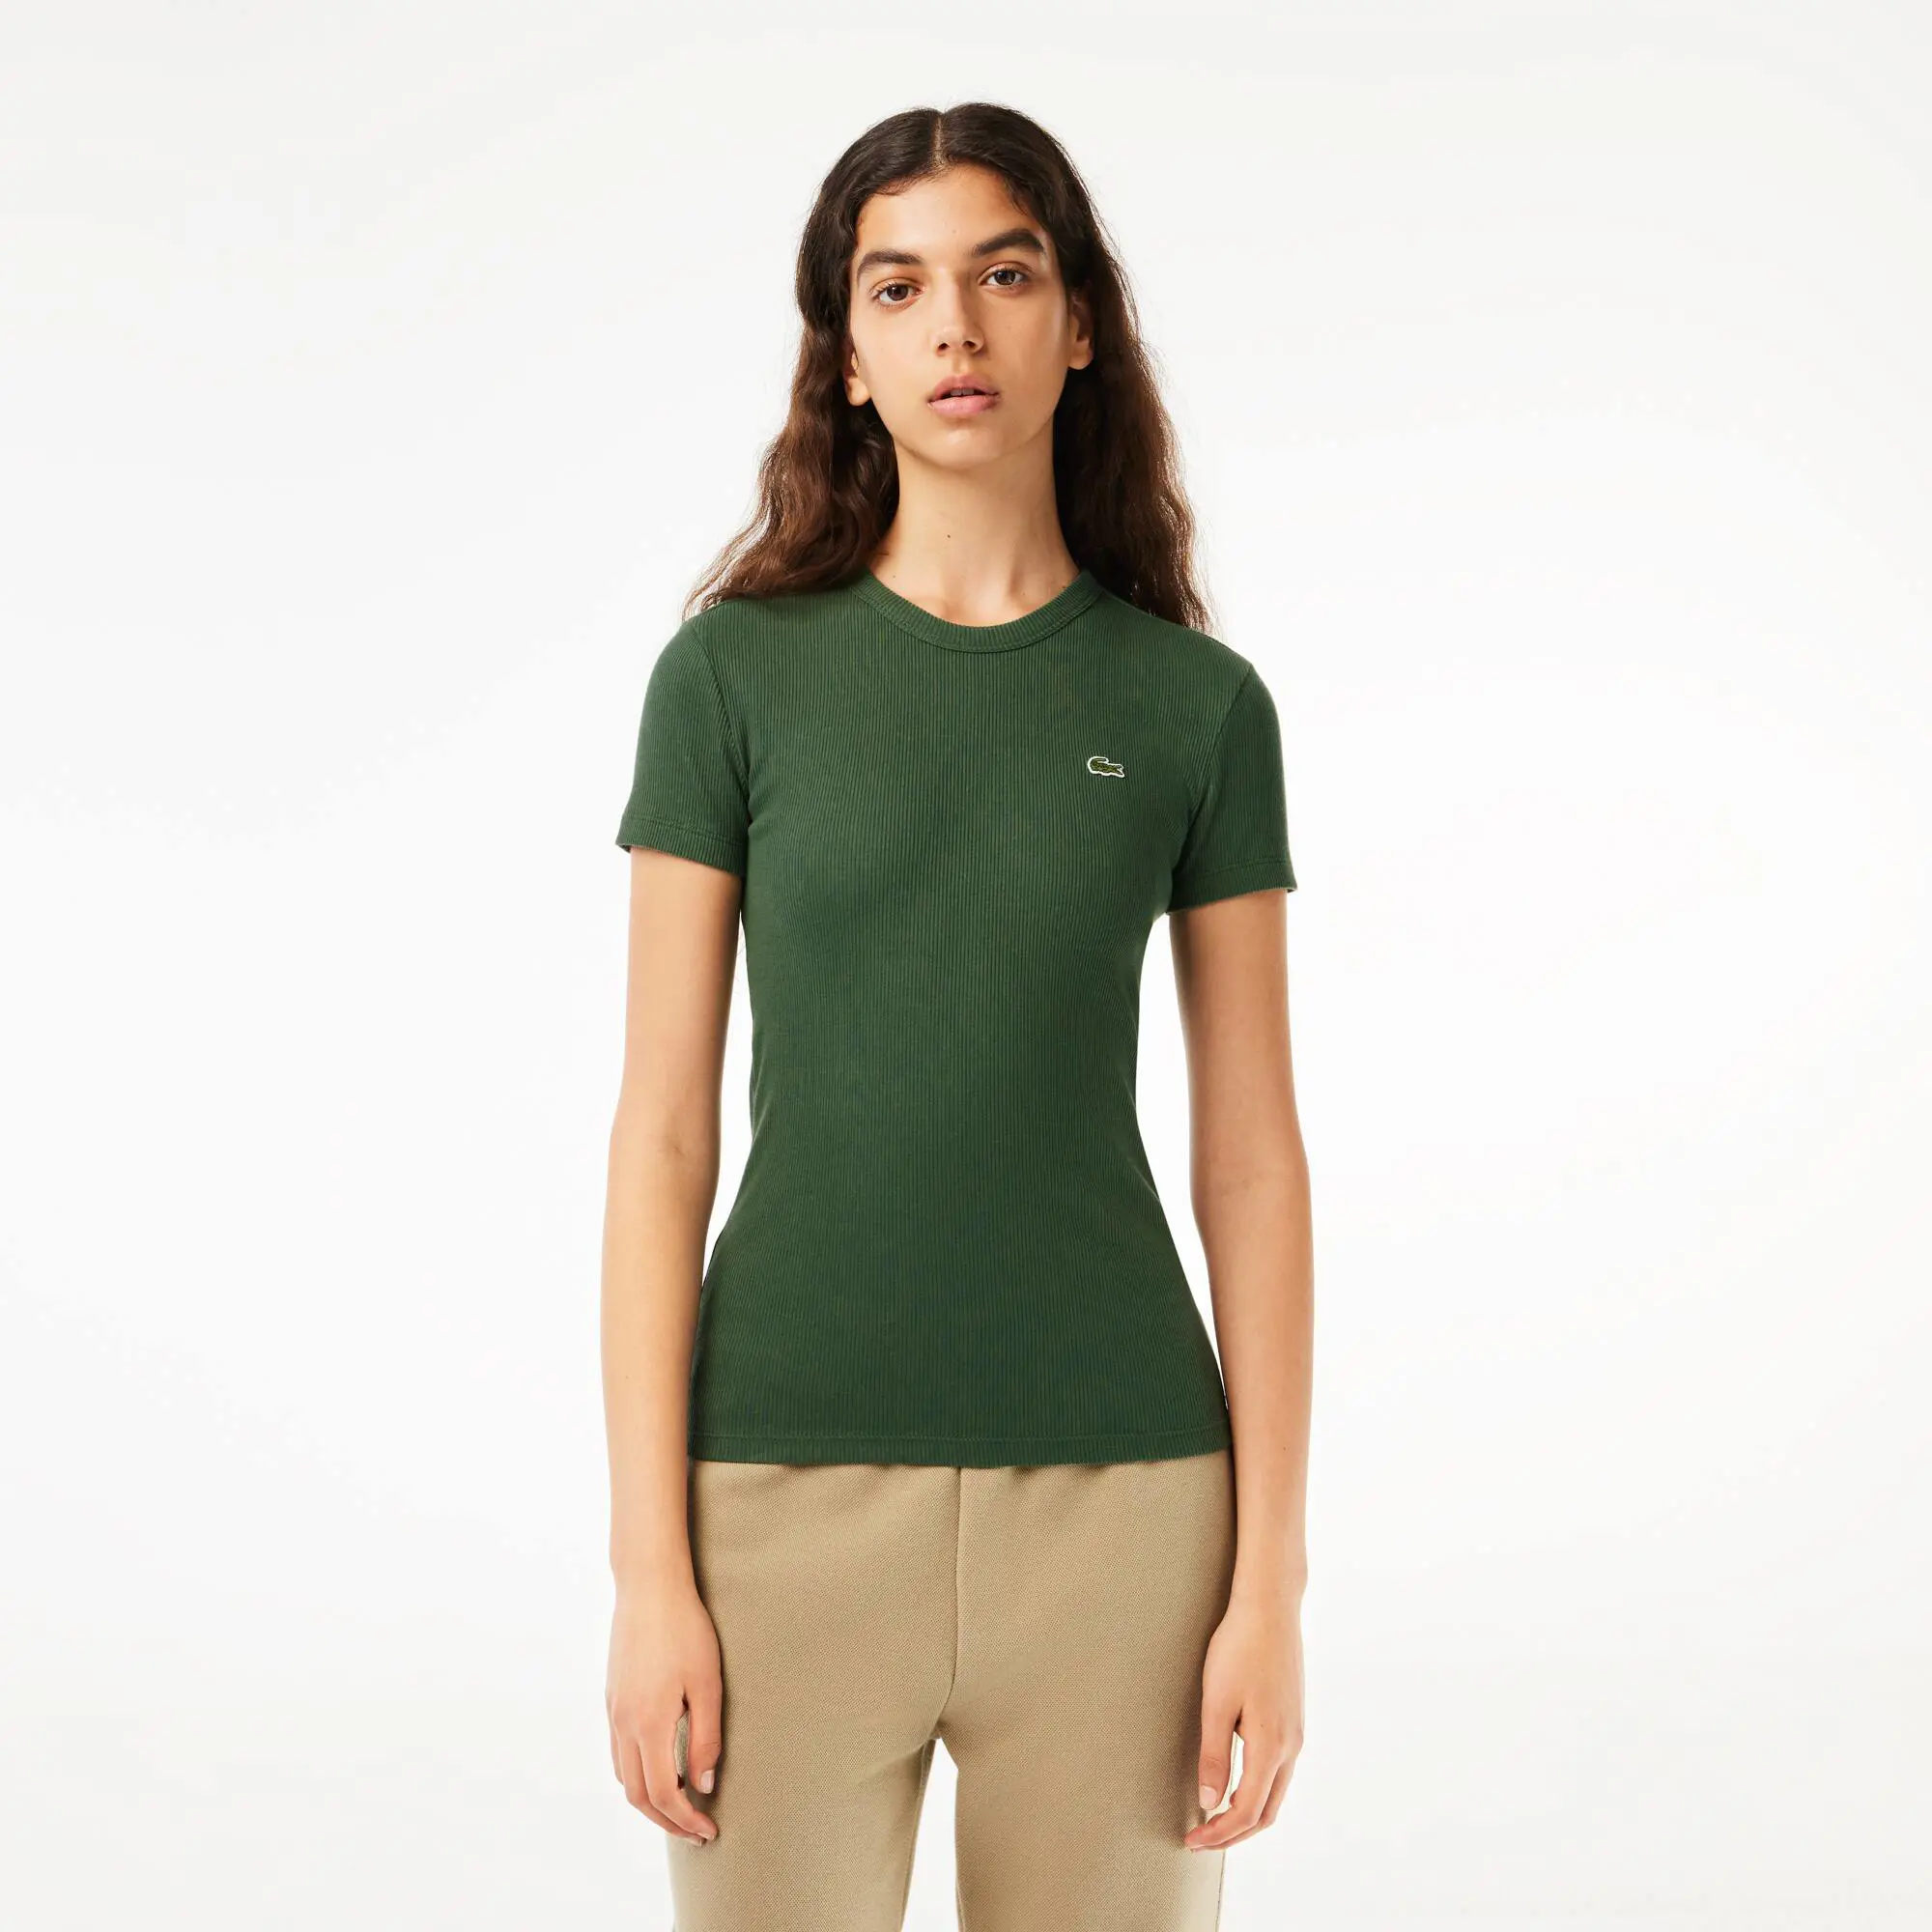 Lacoste Women’s Slim Fit Organic Cotton T-Shirt. 1